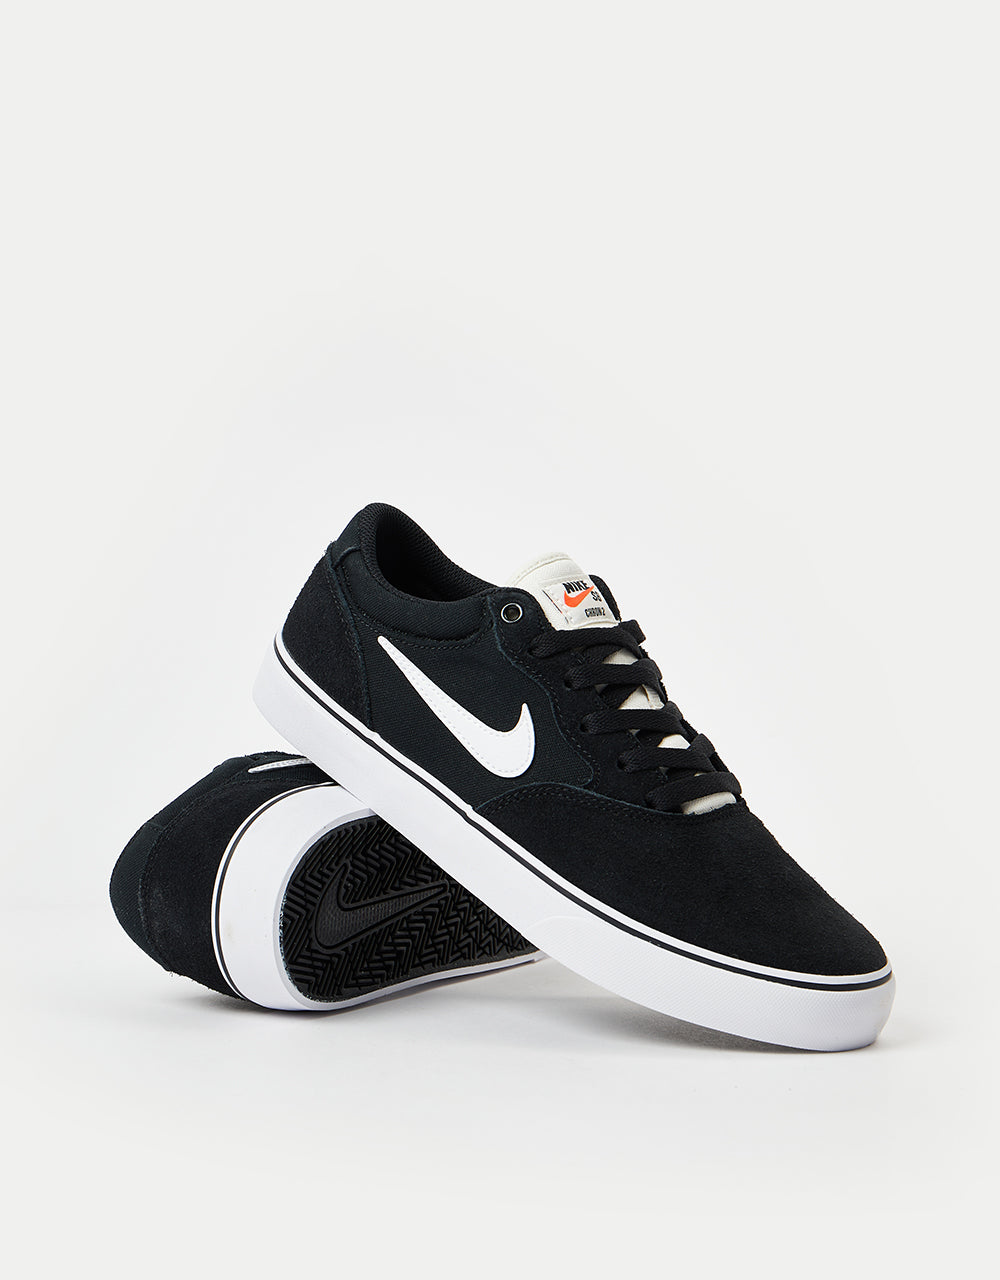 Nike SB Chron 2 Skate Shoes - Black/White-Black-Sail – Route One